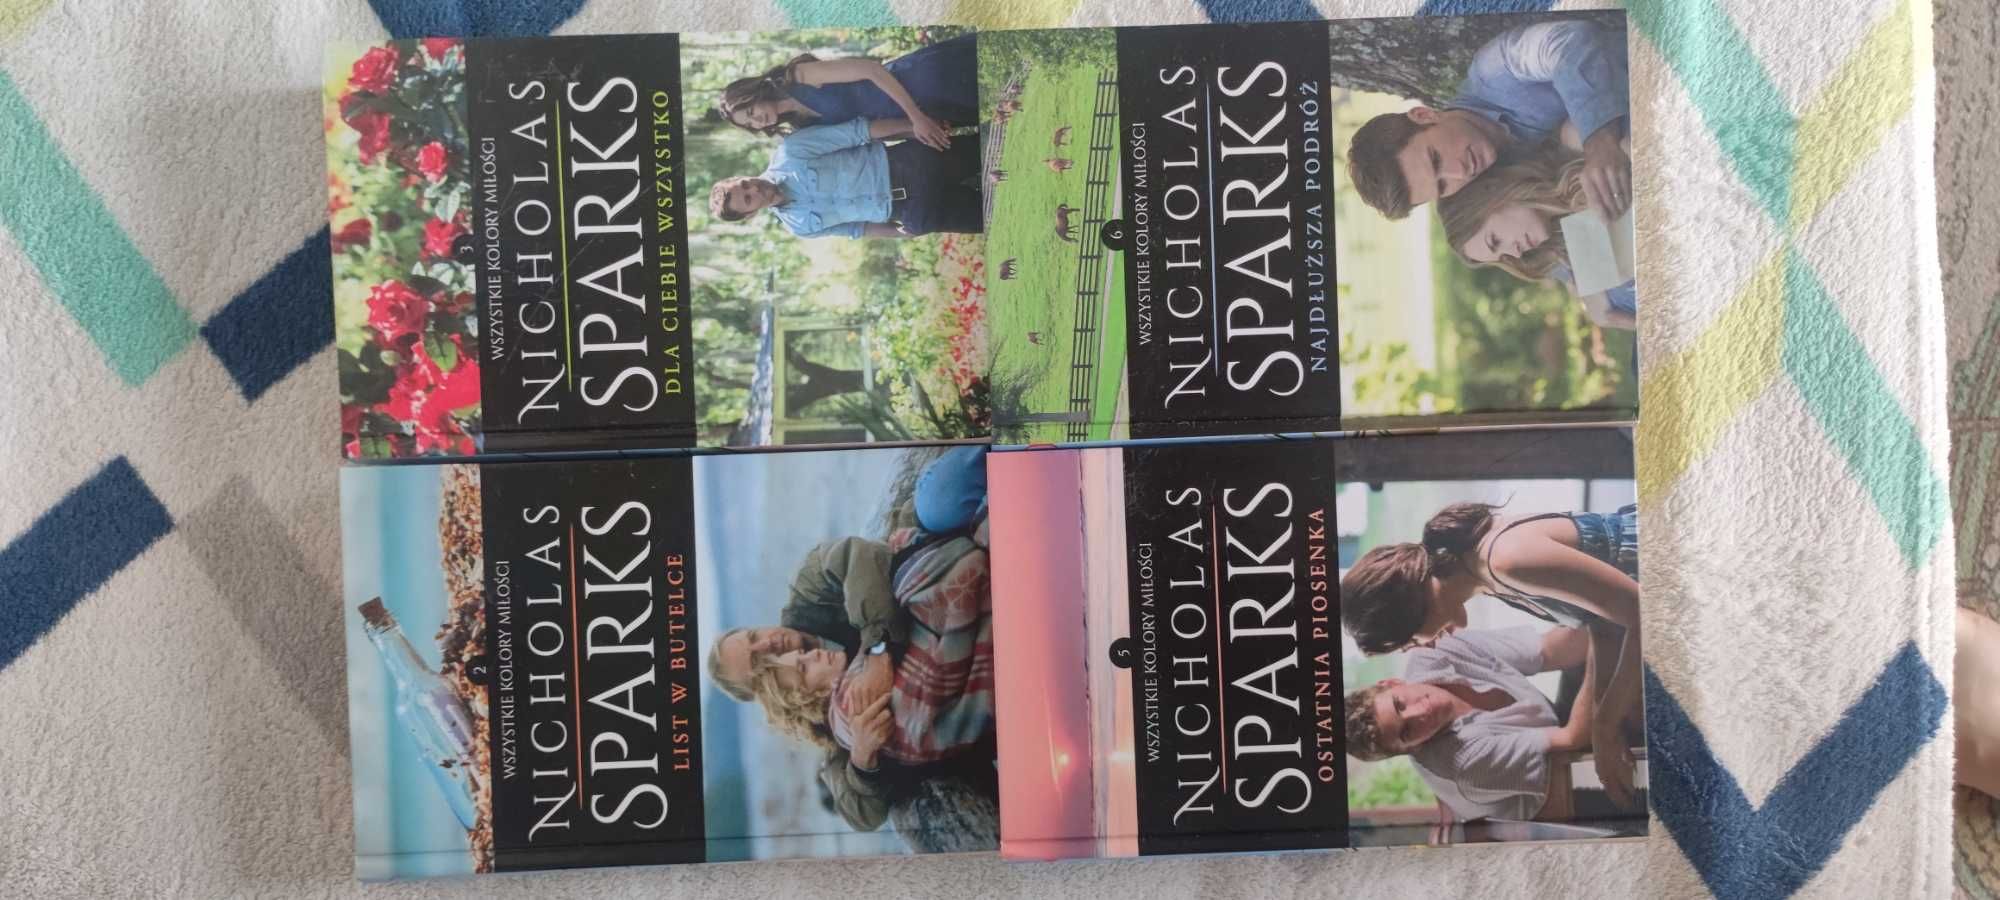 Książki Nicholas Sparks